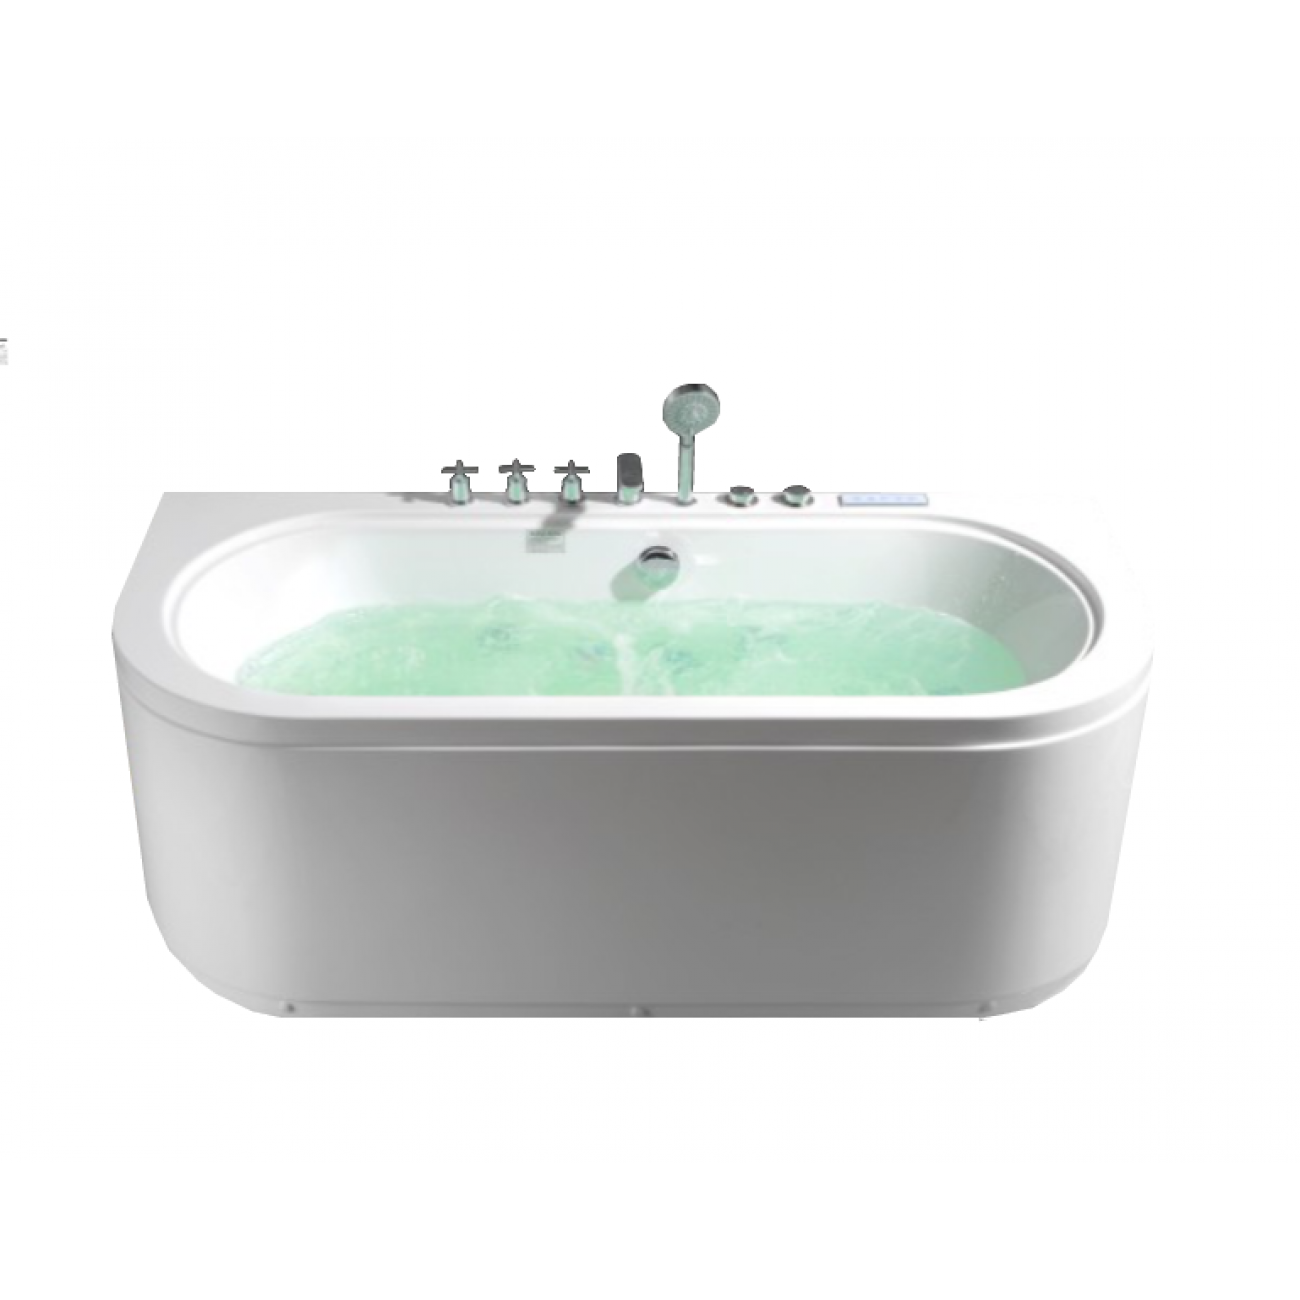 Гидромассажная ванна Frank 170x80 F160 пристенная, белая